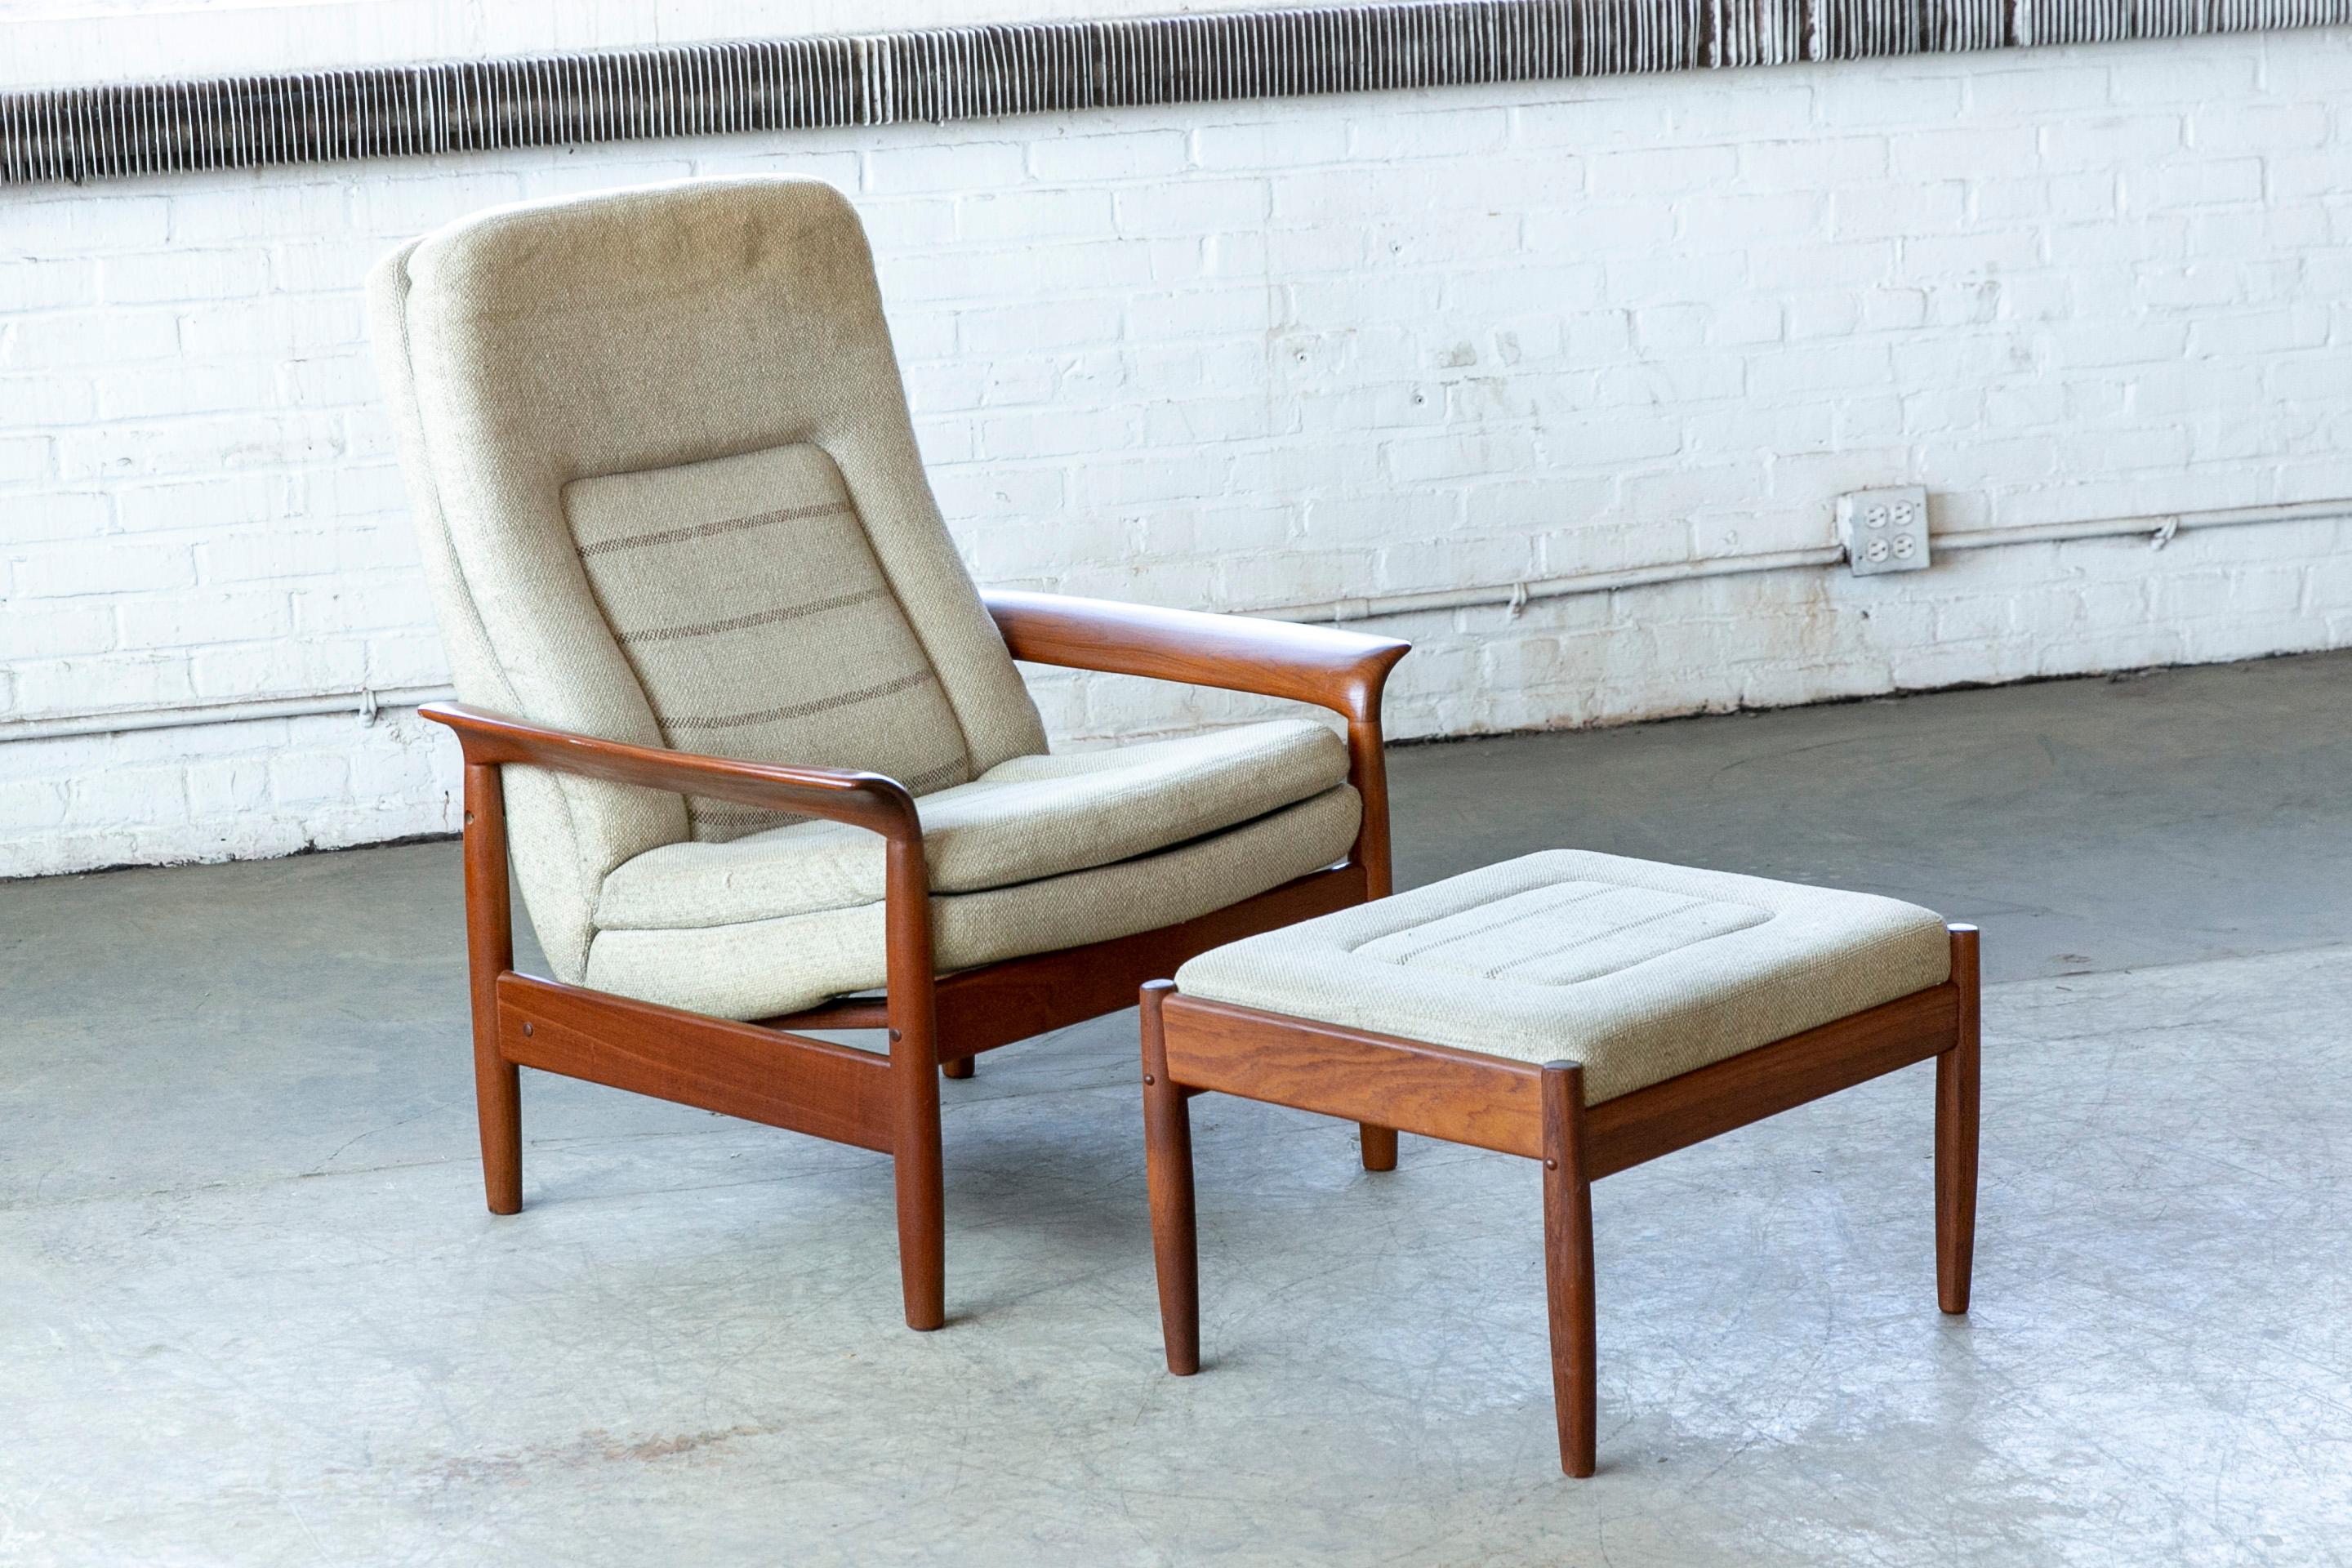 Schöner Hochlehner-Sessel mit Ottomane wahrscheinlich um 1970 oder früh in gemacht  diesem Jahrzehnt. Es ist dänisch, aber wir sind unsicher über den Designer und den Hersteller, da es unmarkiert ist. Sie wurde jedoch in den 1970er Jahren vom